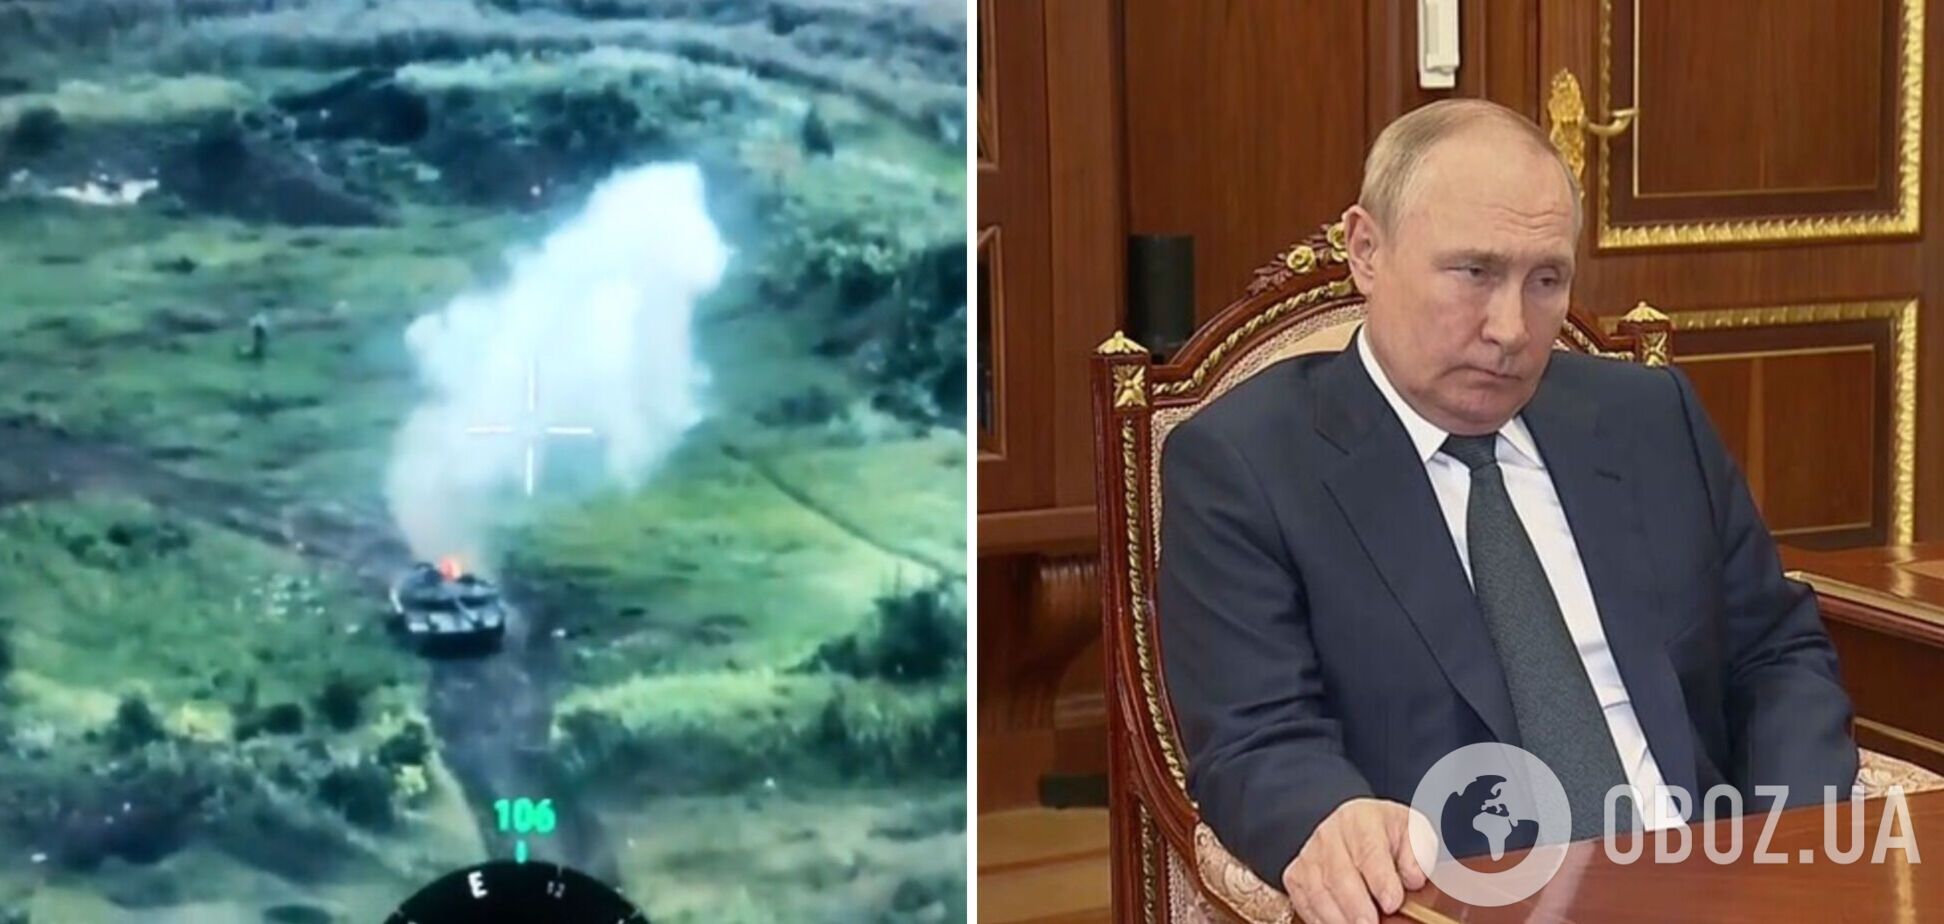 'Довольно курить, где попало': в сети показали видео попадания в любимый танк Путина 'Прорыв'